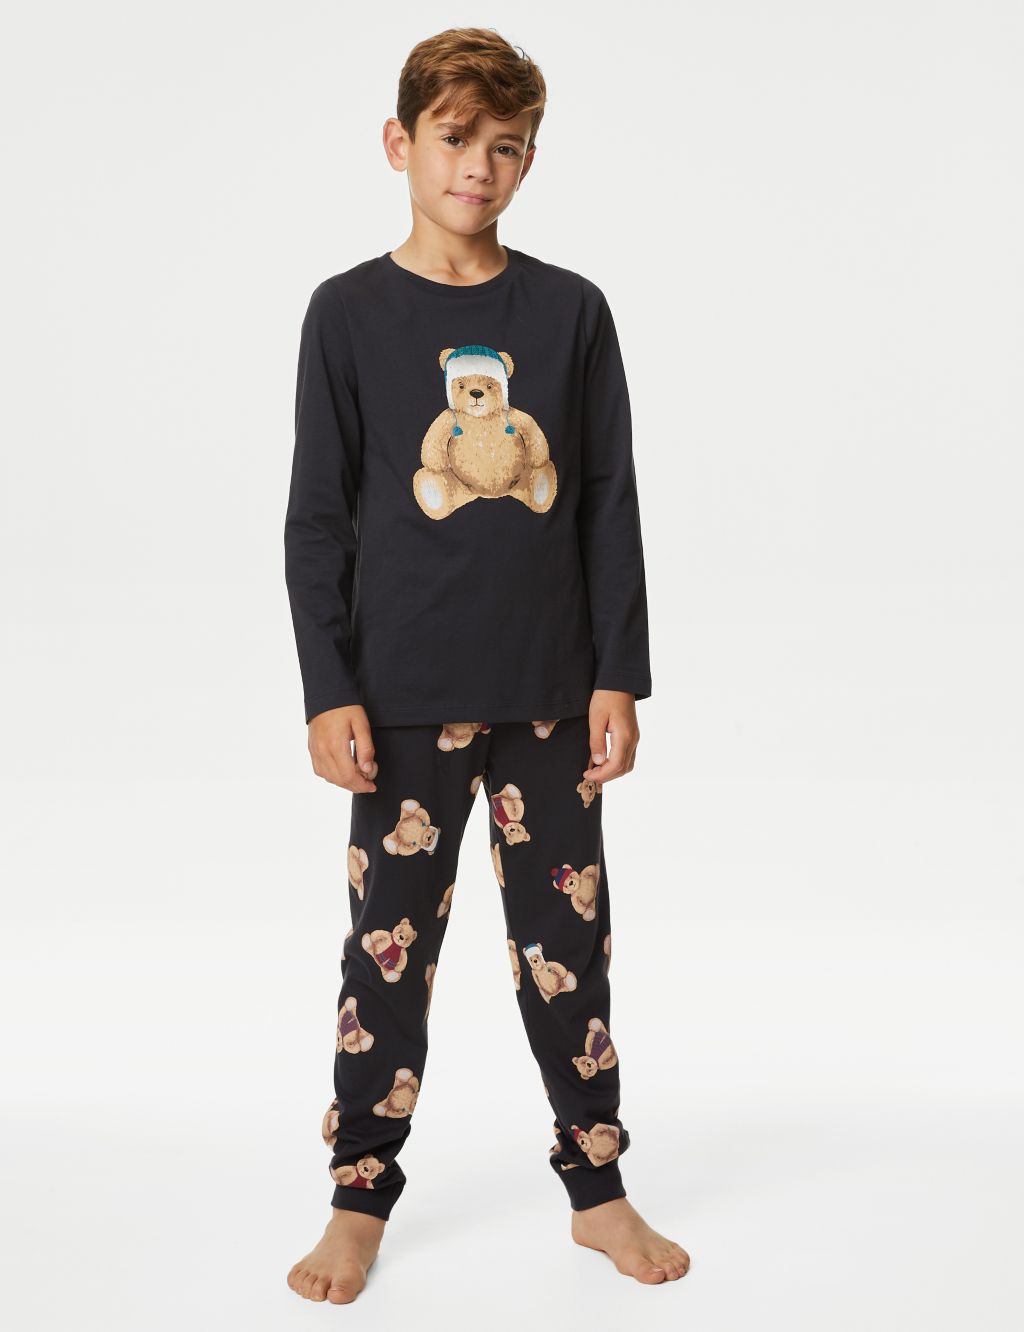 Kids' Spencer Bear™ Family Christmas Pyjama Set (1-16 Yrs) image 1